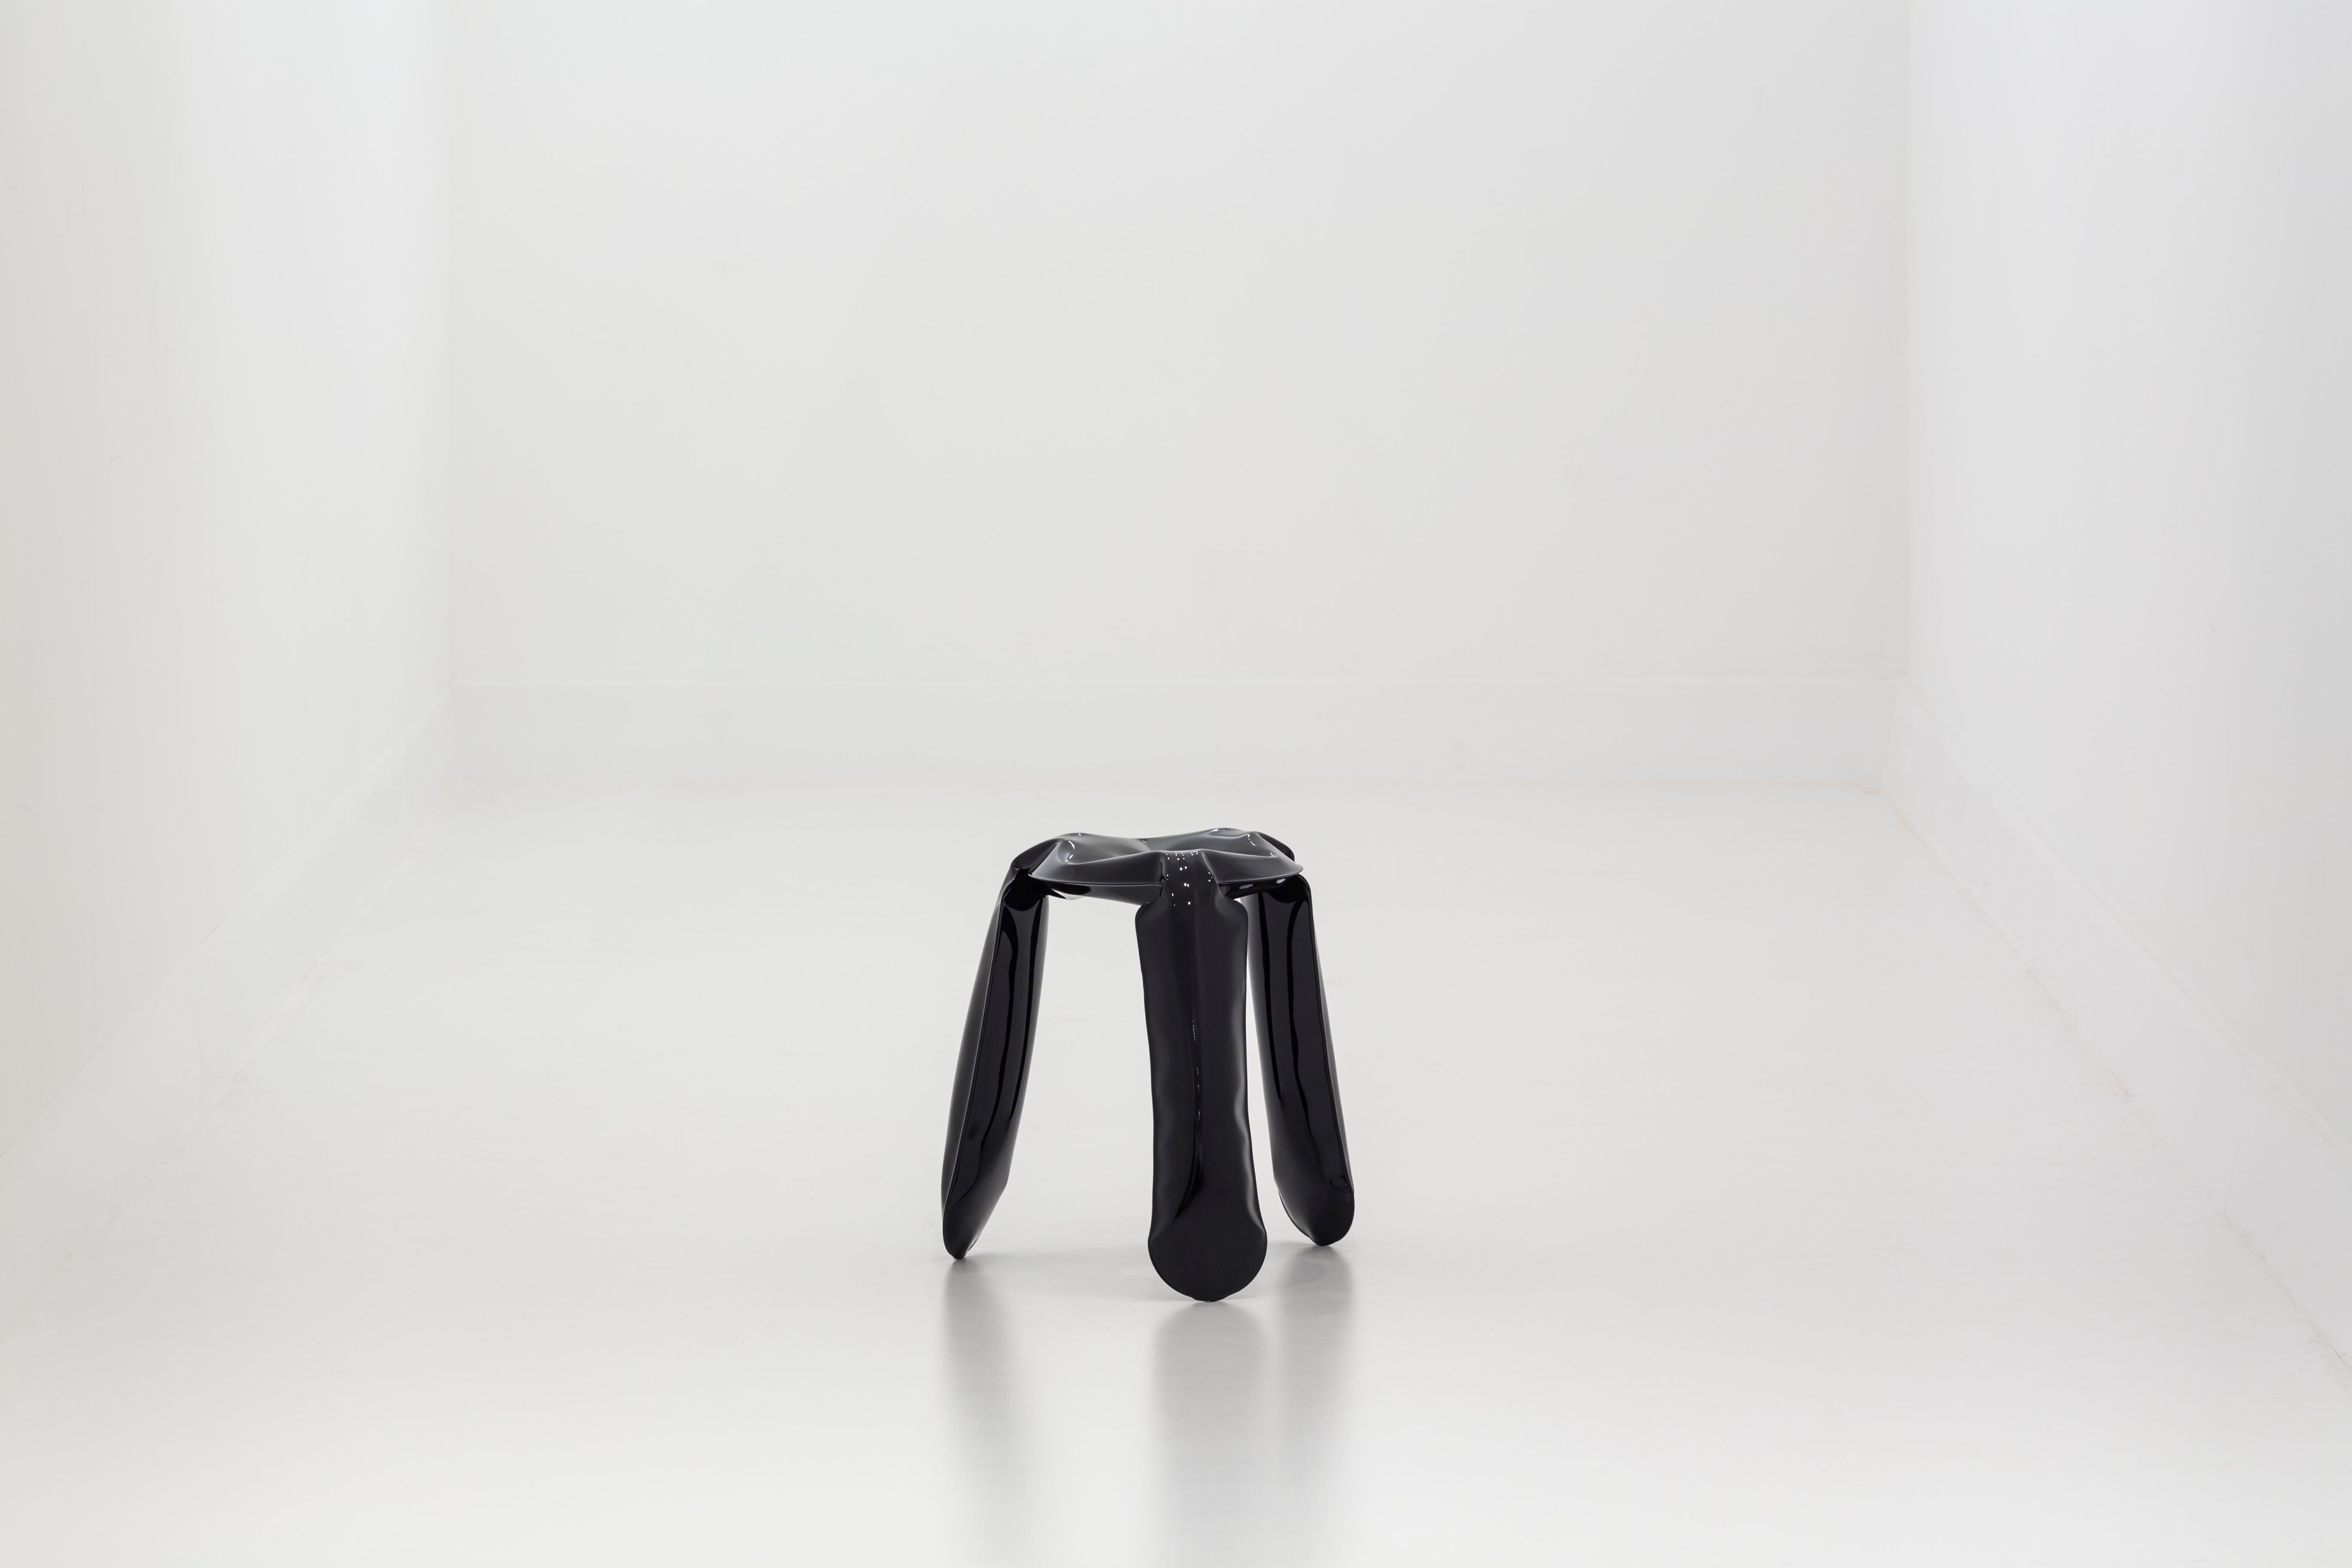 Tabouret «lopp » de Zieta - version noire en acier inoxydable

Modèle standard
Mesures : 50 cm de haut, 35 cm de diamètre

 
Le tabouret Plopp est un tabouret conçu par Zieta Prozessdesign, une agence de design polonaise fondée par le célèbre